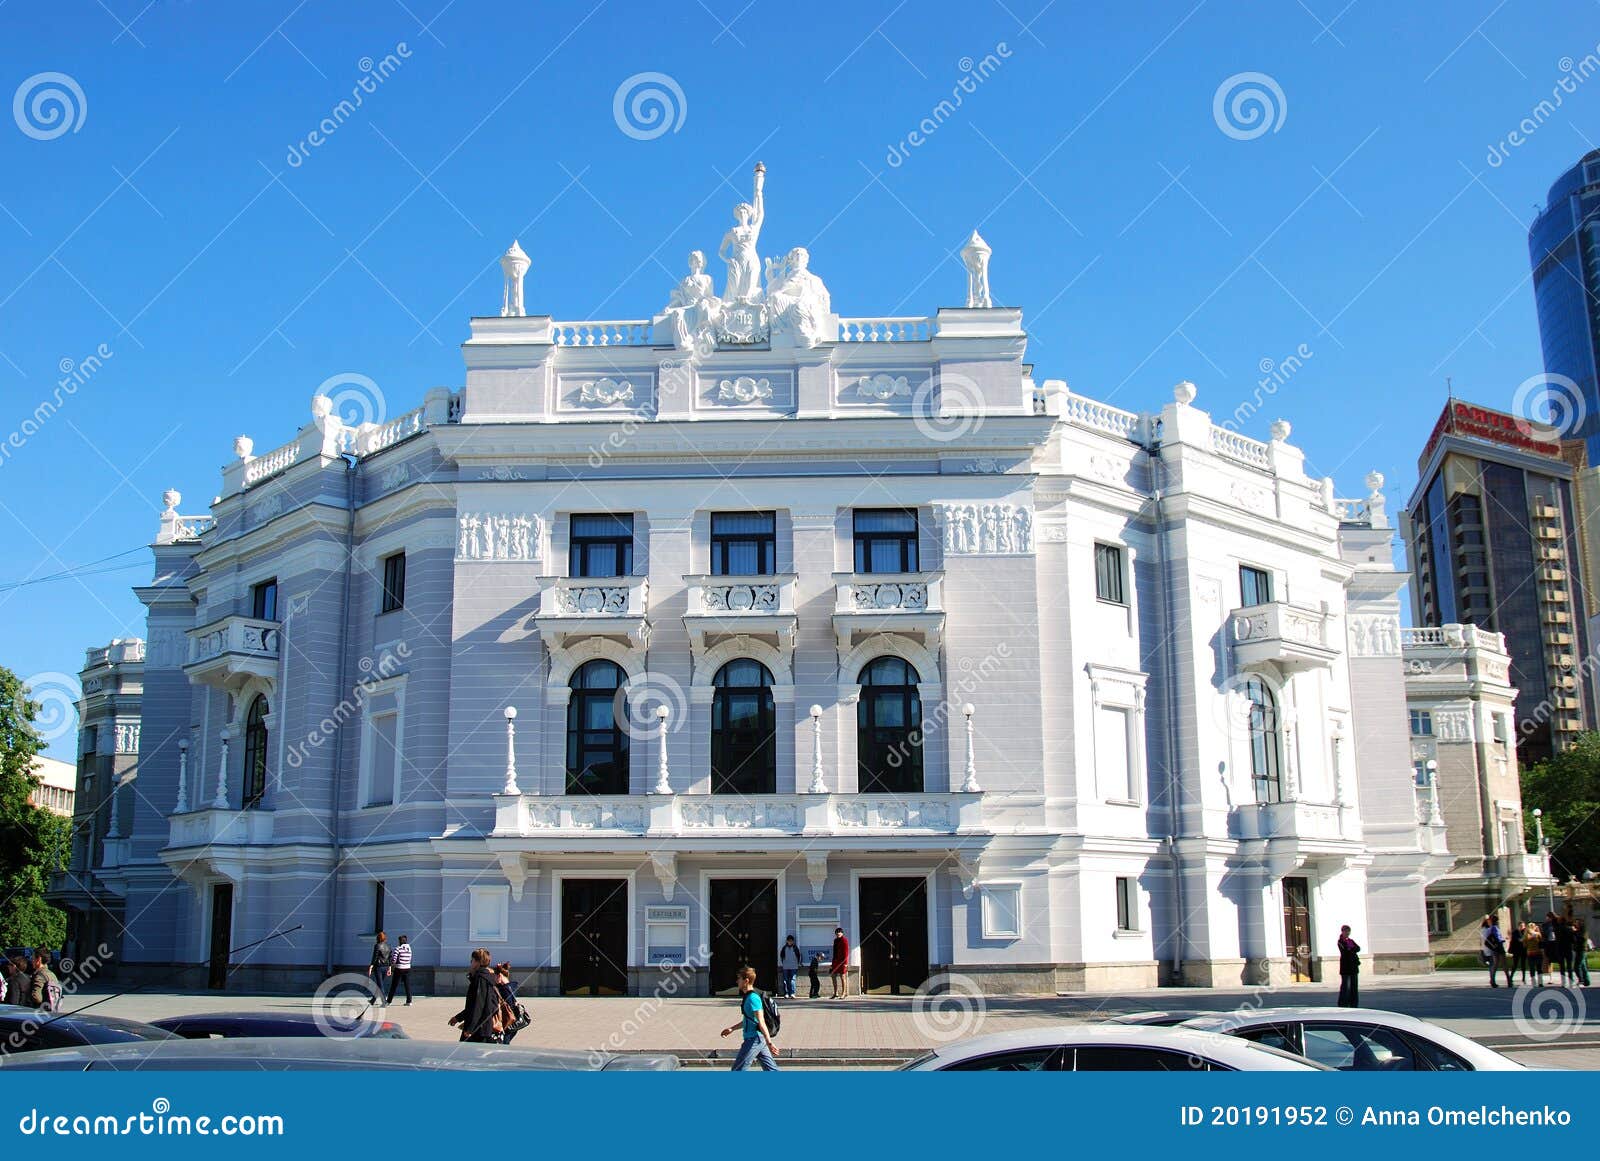 Театр оперы и балета Екатеринбург фасад старый